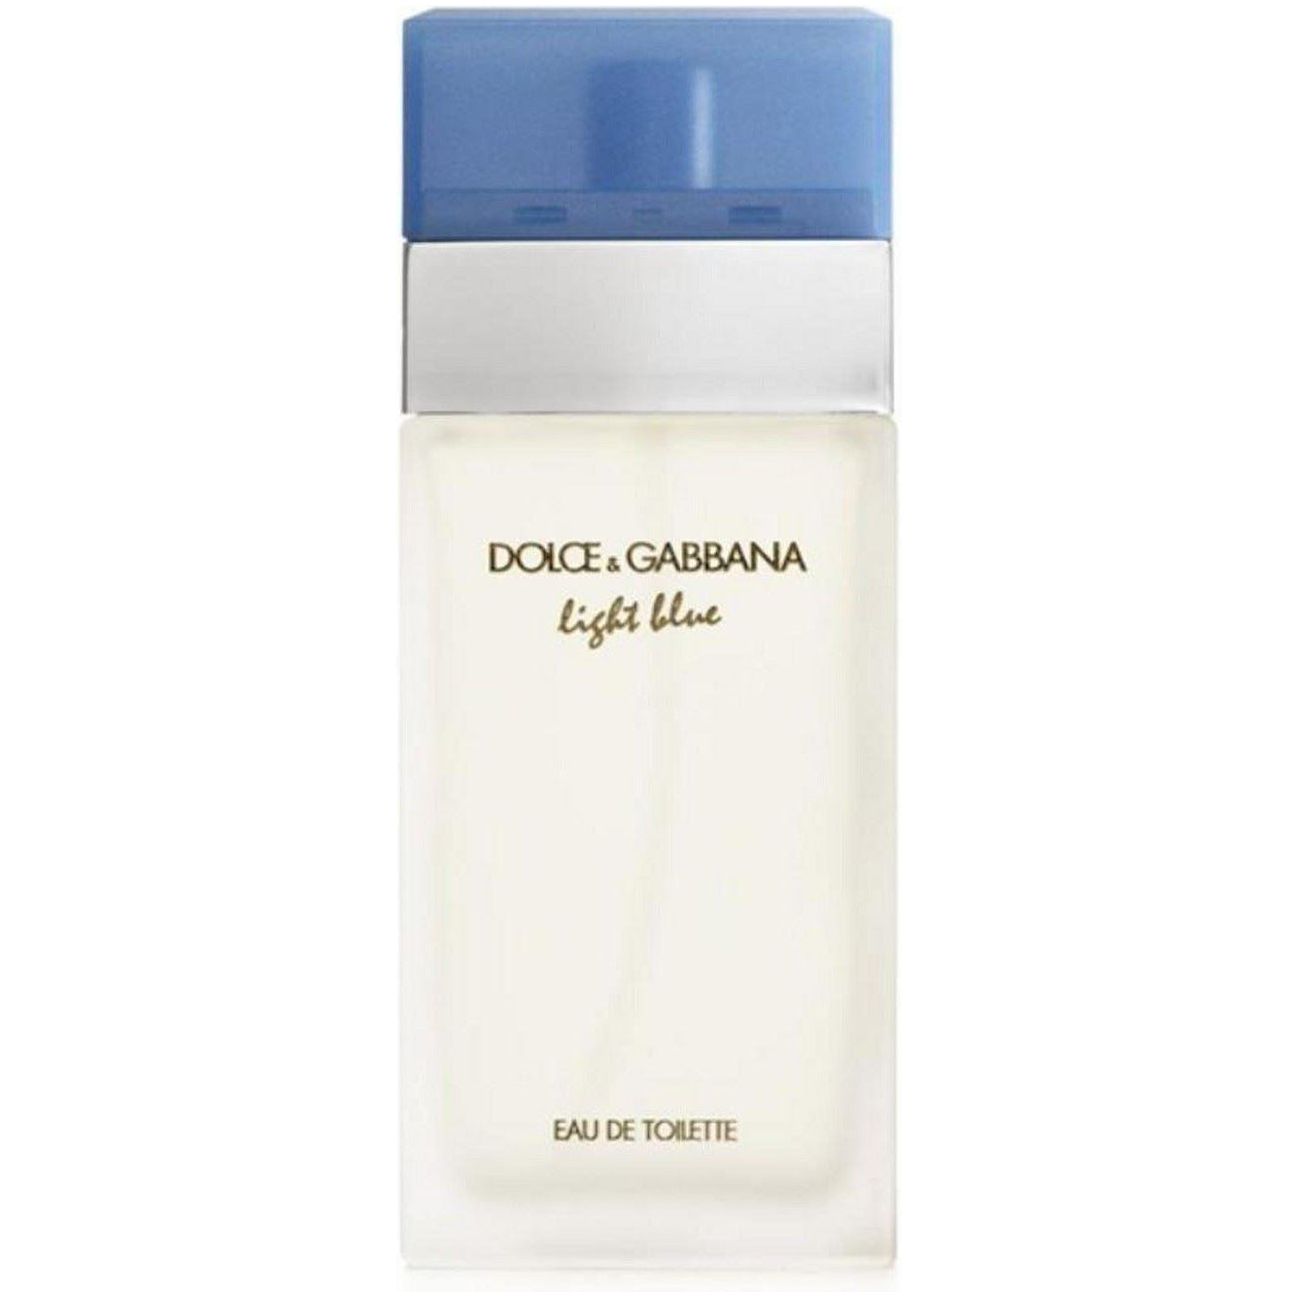 Dolce & Gabbana Light Blue Perfume Eau de Toilette